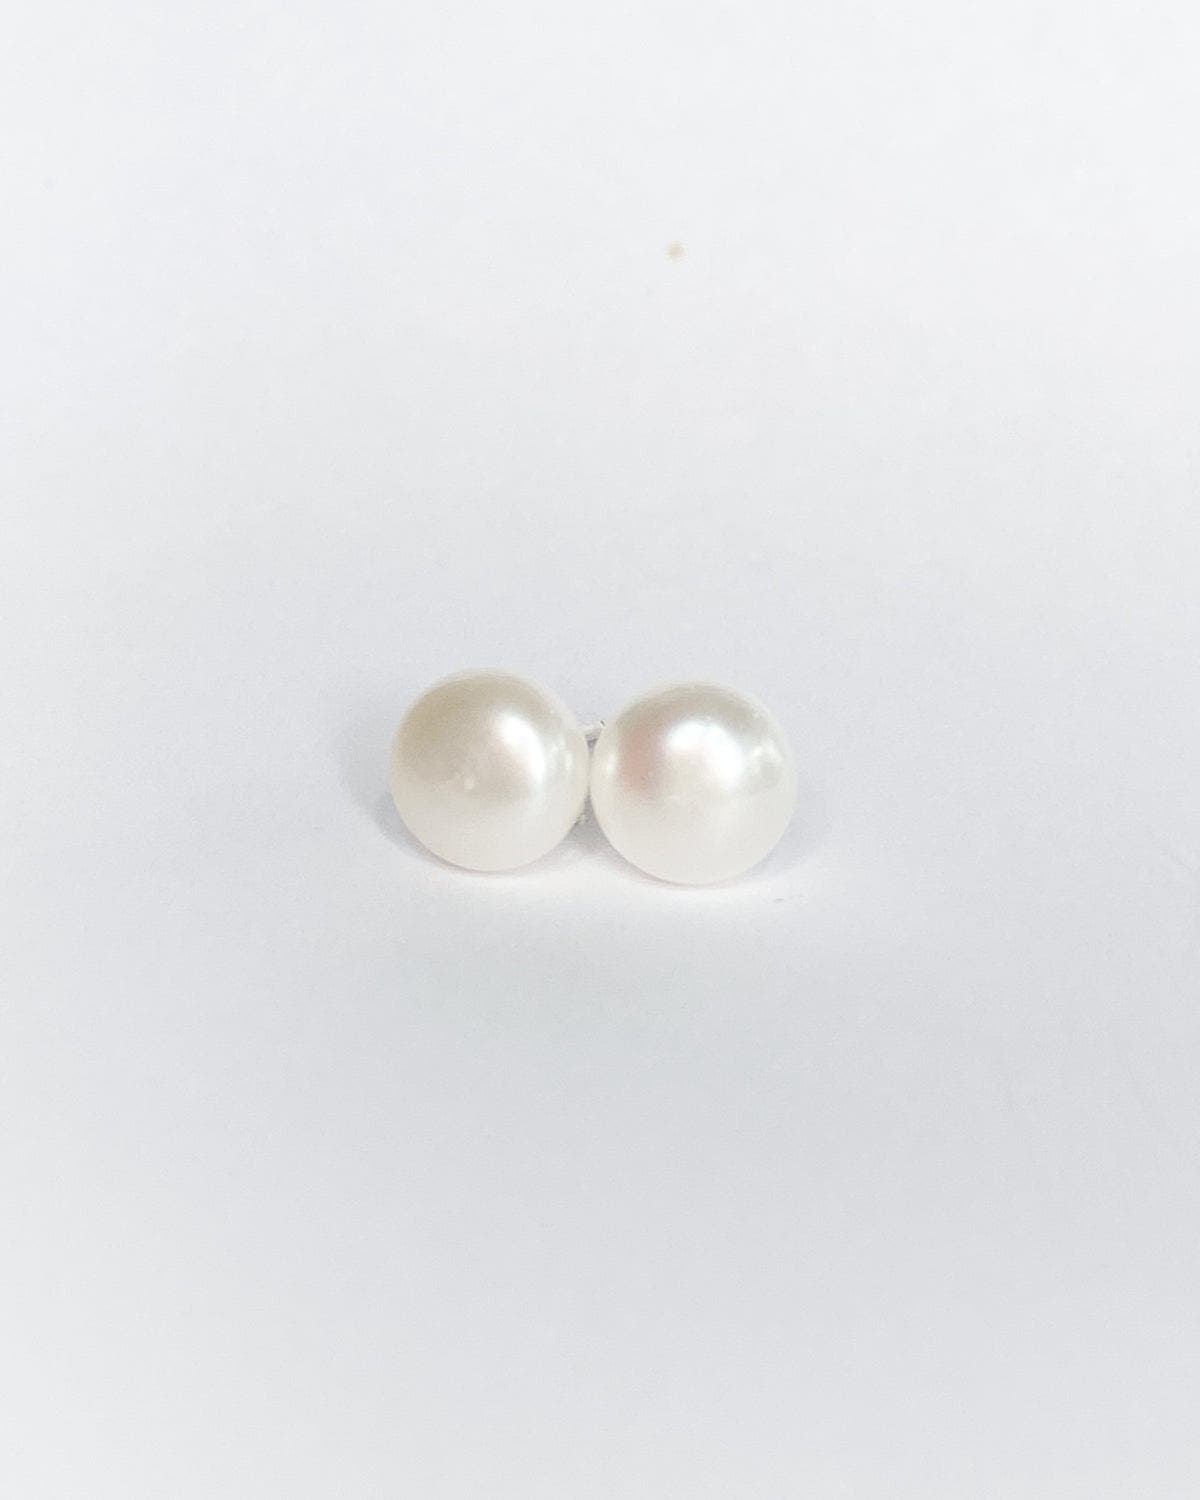 Real pearl stud earrings freeshipping - Ollijewelry